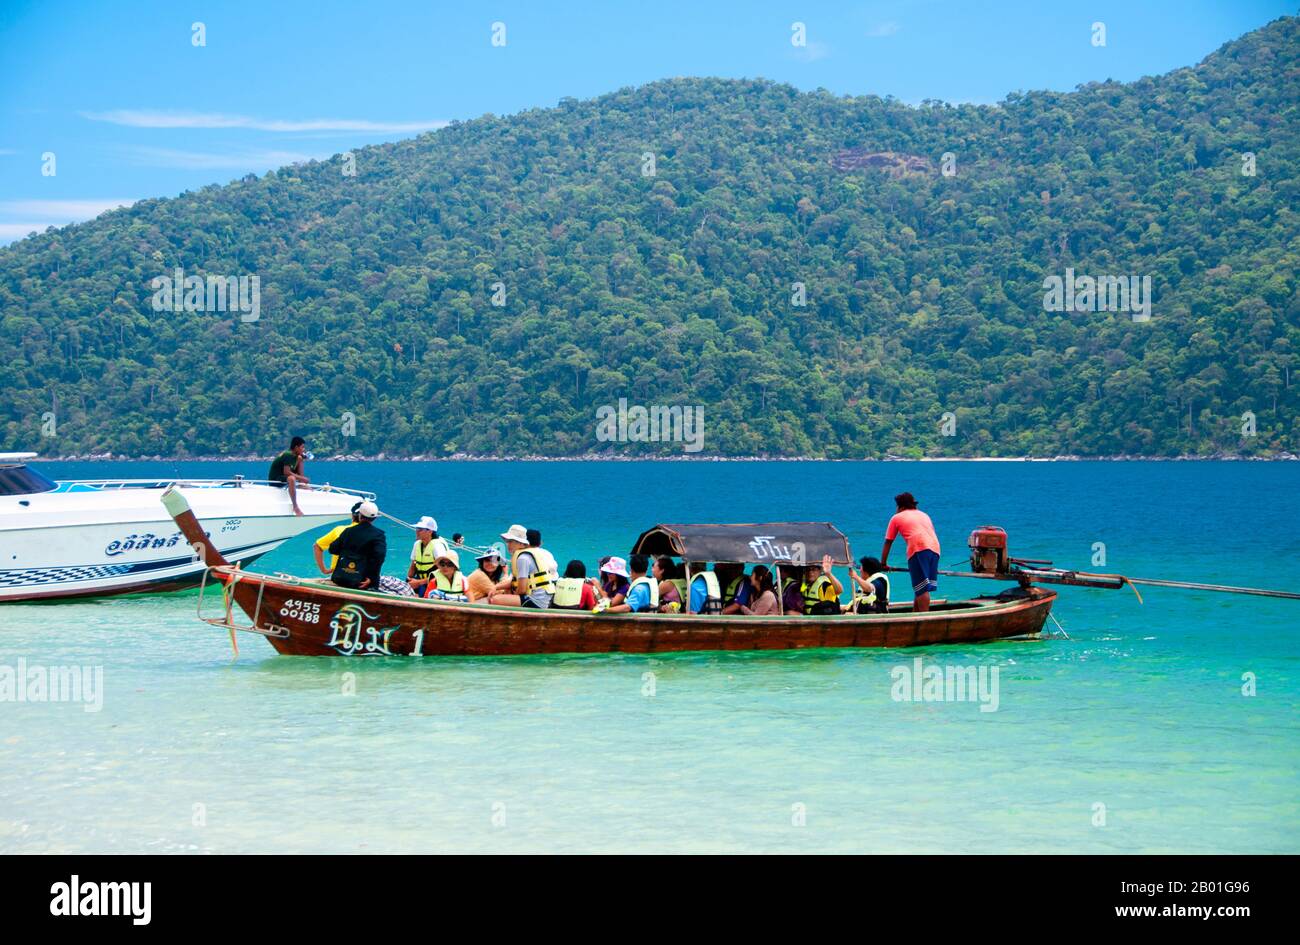 Thailand: Besuch Von Ko Rawi, Ko Tarutao Marine National Park. Ko Rawi ist die zweitgrößte Insel der Adang-Rawi Gruppe, die selbst Teil des Ko Tarutao Marine National Park ist. Sie hat eine Fläche von etwa 29 Quadratkilometern (11,5 Quadratmeilen) und liegt nur 10 km (6 Meilen) westlich von Ko Adang. Der Marine-Nationalpark Ko Tarutao besteht aus 51 Inseln in zwei Hauptgruppen, die über die Andamanensee im südlichsten Thailand verstreut sind. Nur sieben der Inseln haben jede Größe, einschließlich Ko Tarutao im Osten und Ko Adang-Ko Rawi im Westen. Stockfoto